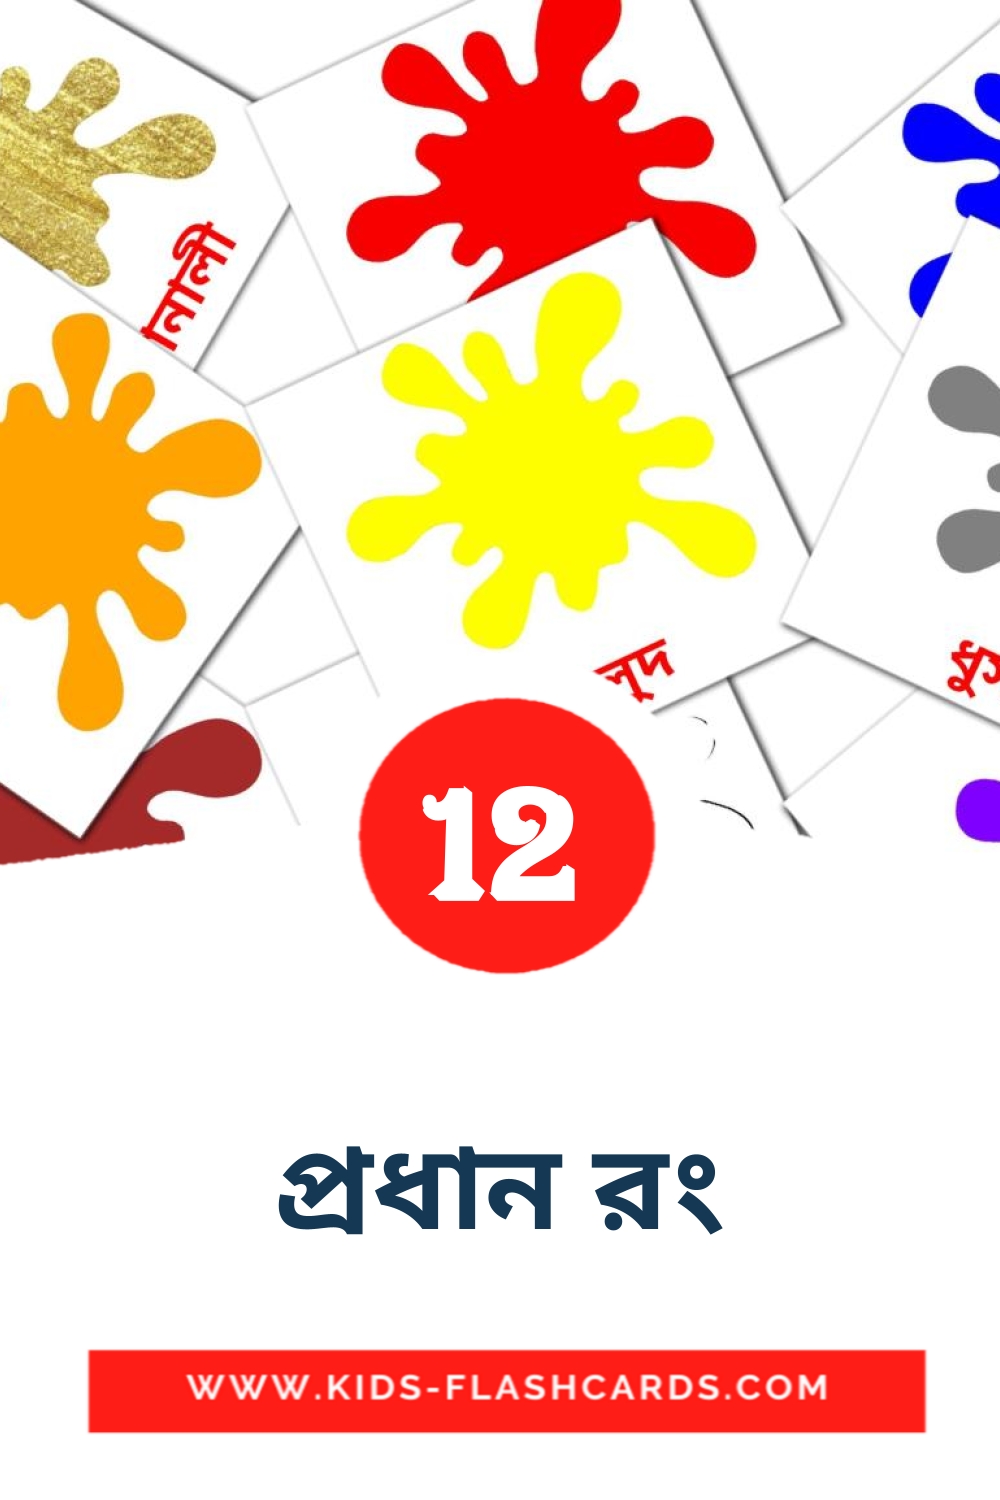 12 carte illustrate di প্রধান রং per la scuola materna in bengalese